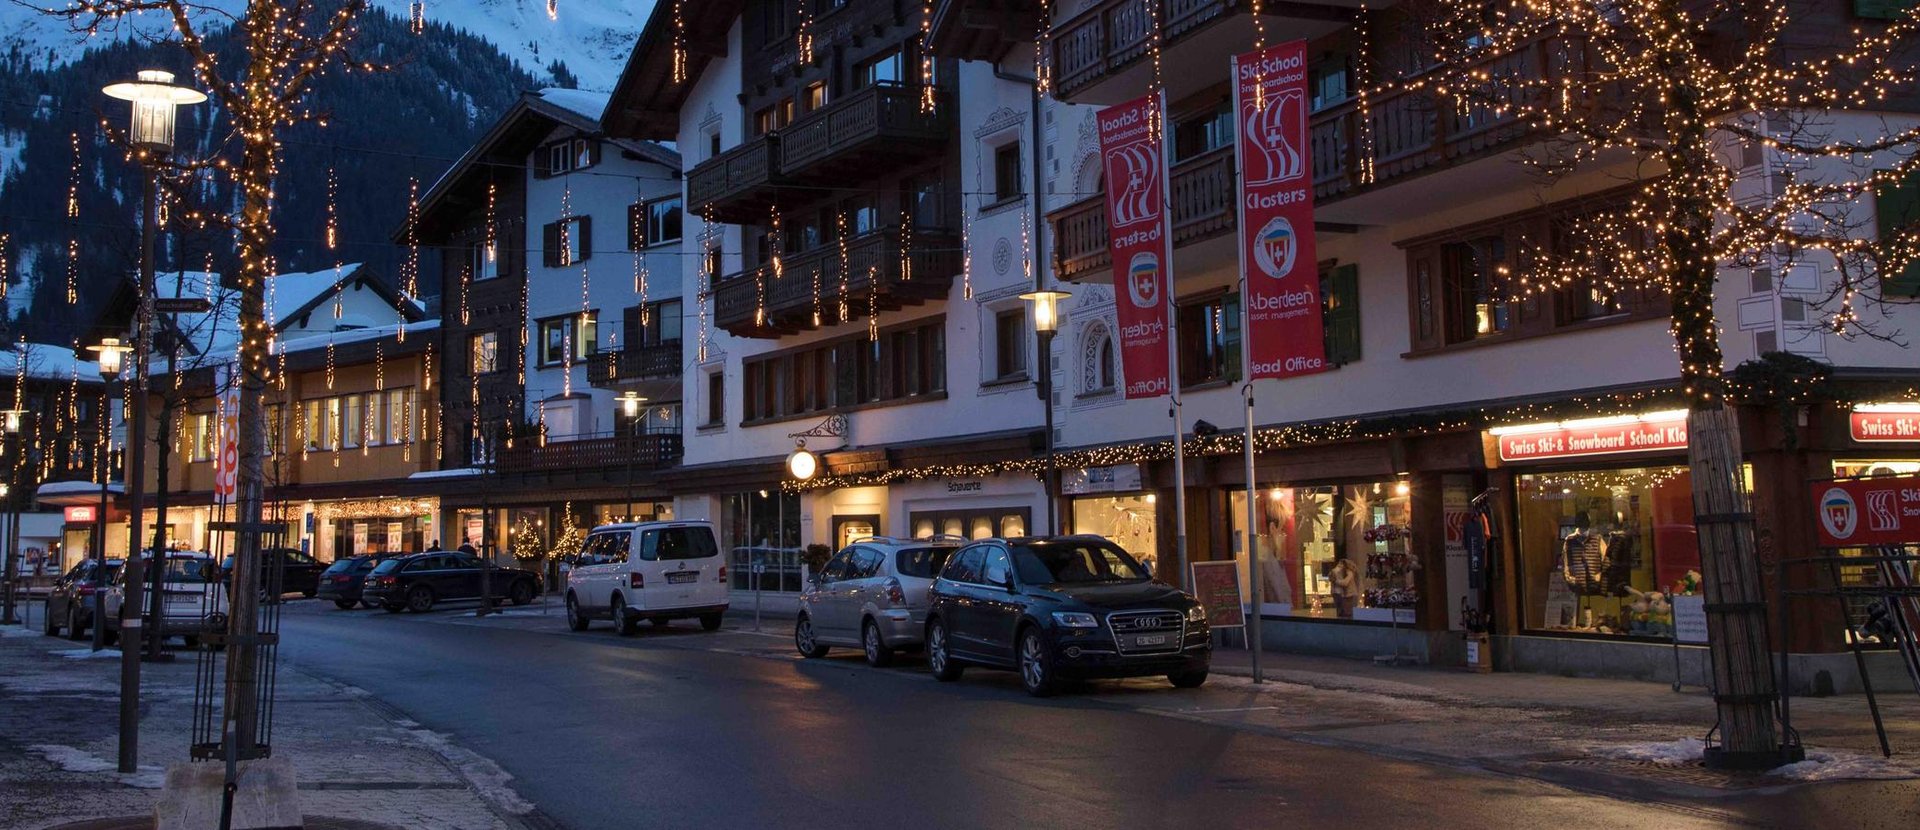 Geschäfte in Davos Klosters